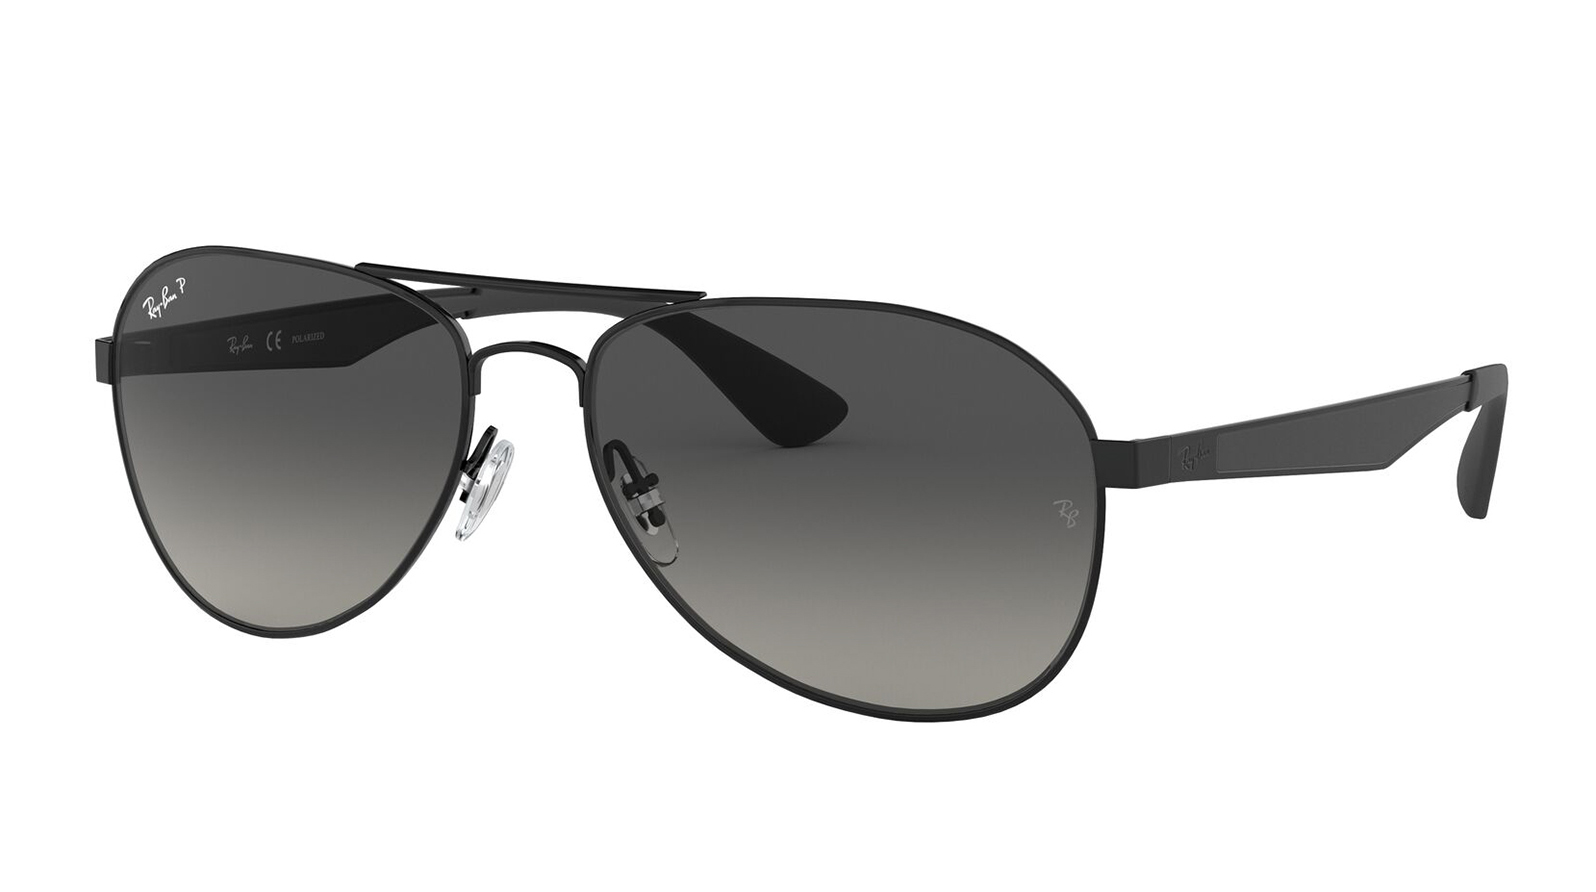 Ray-Ban Active Lifestyle RB 3549 002/T3 grand voyage солнцезащитные очки для водителя с поляризацией